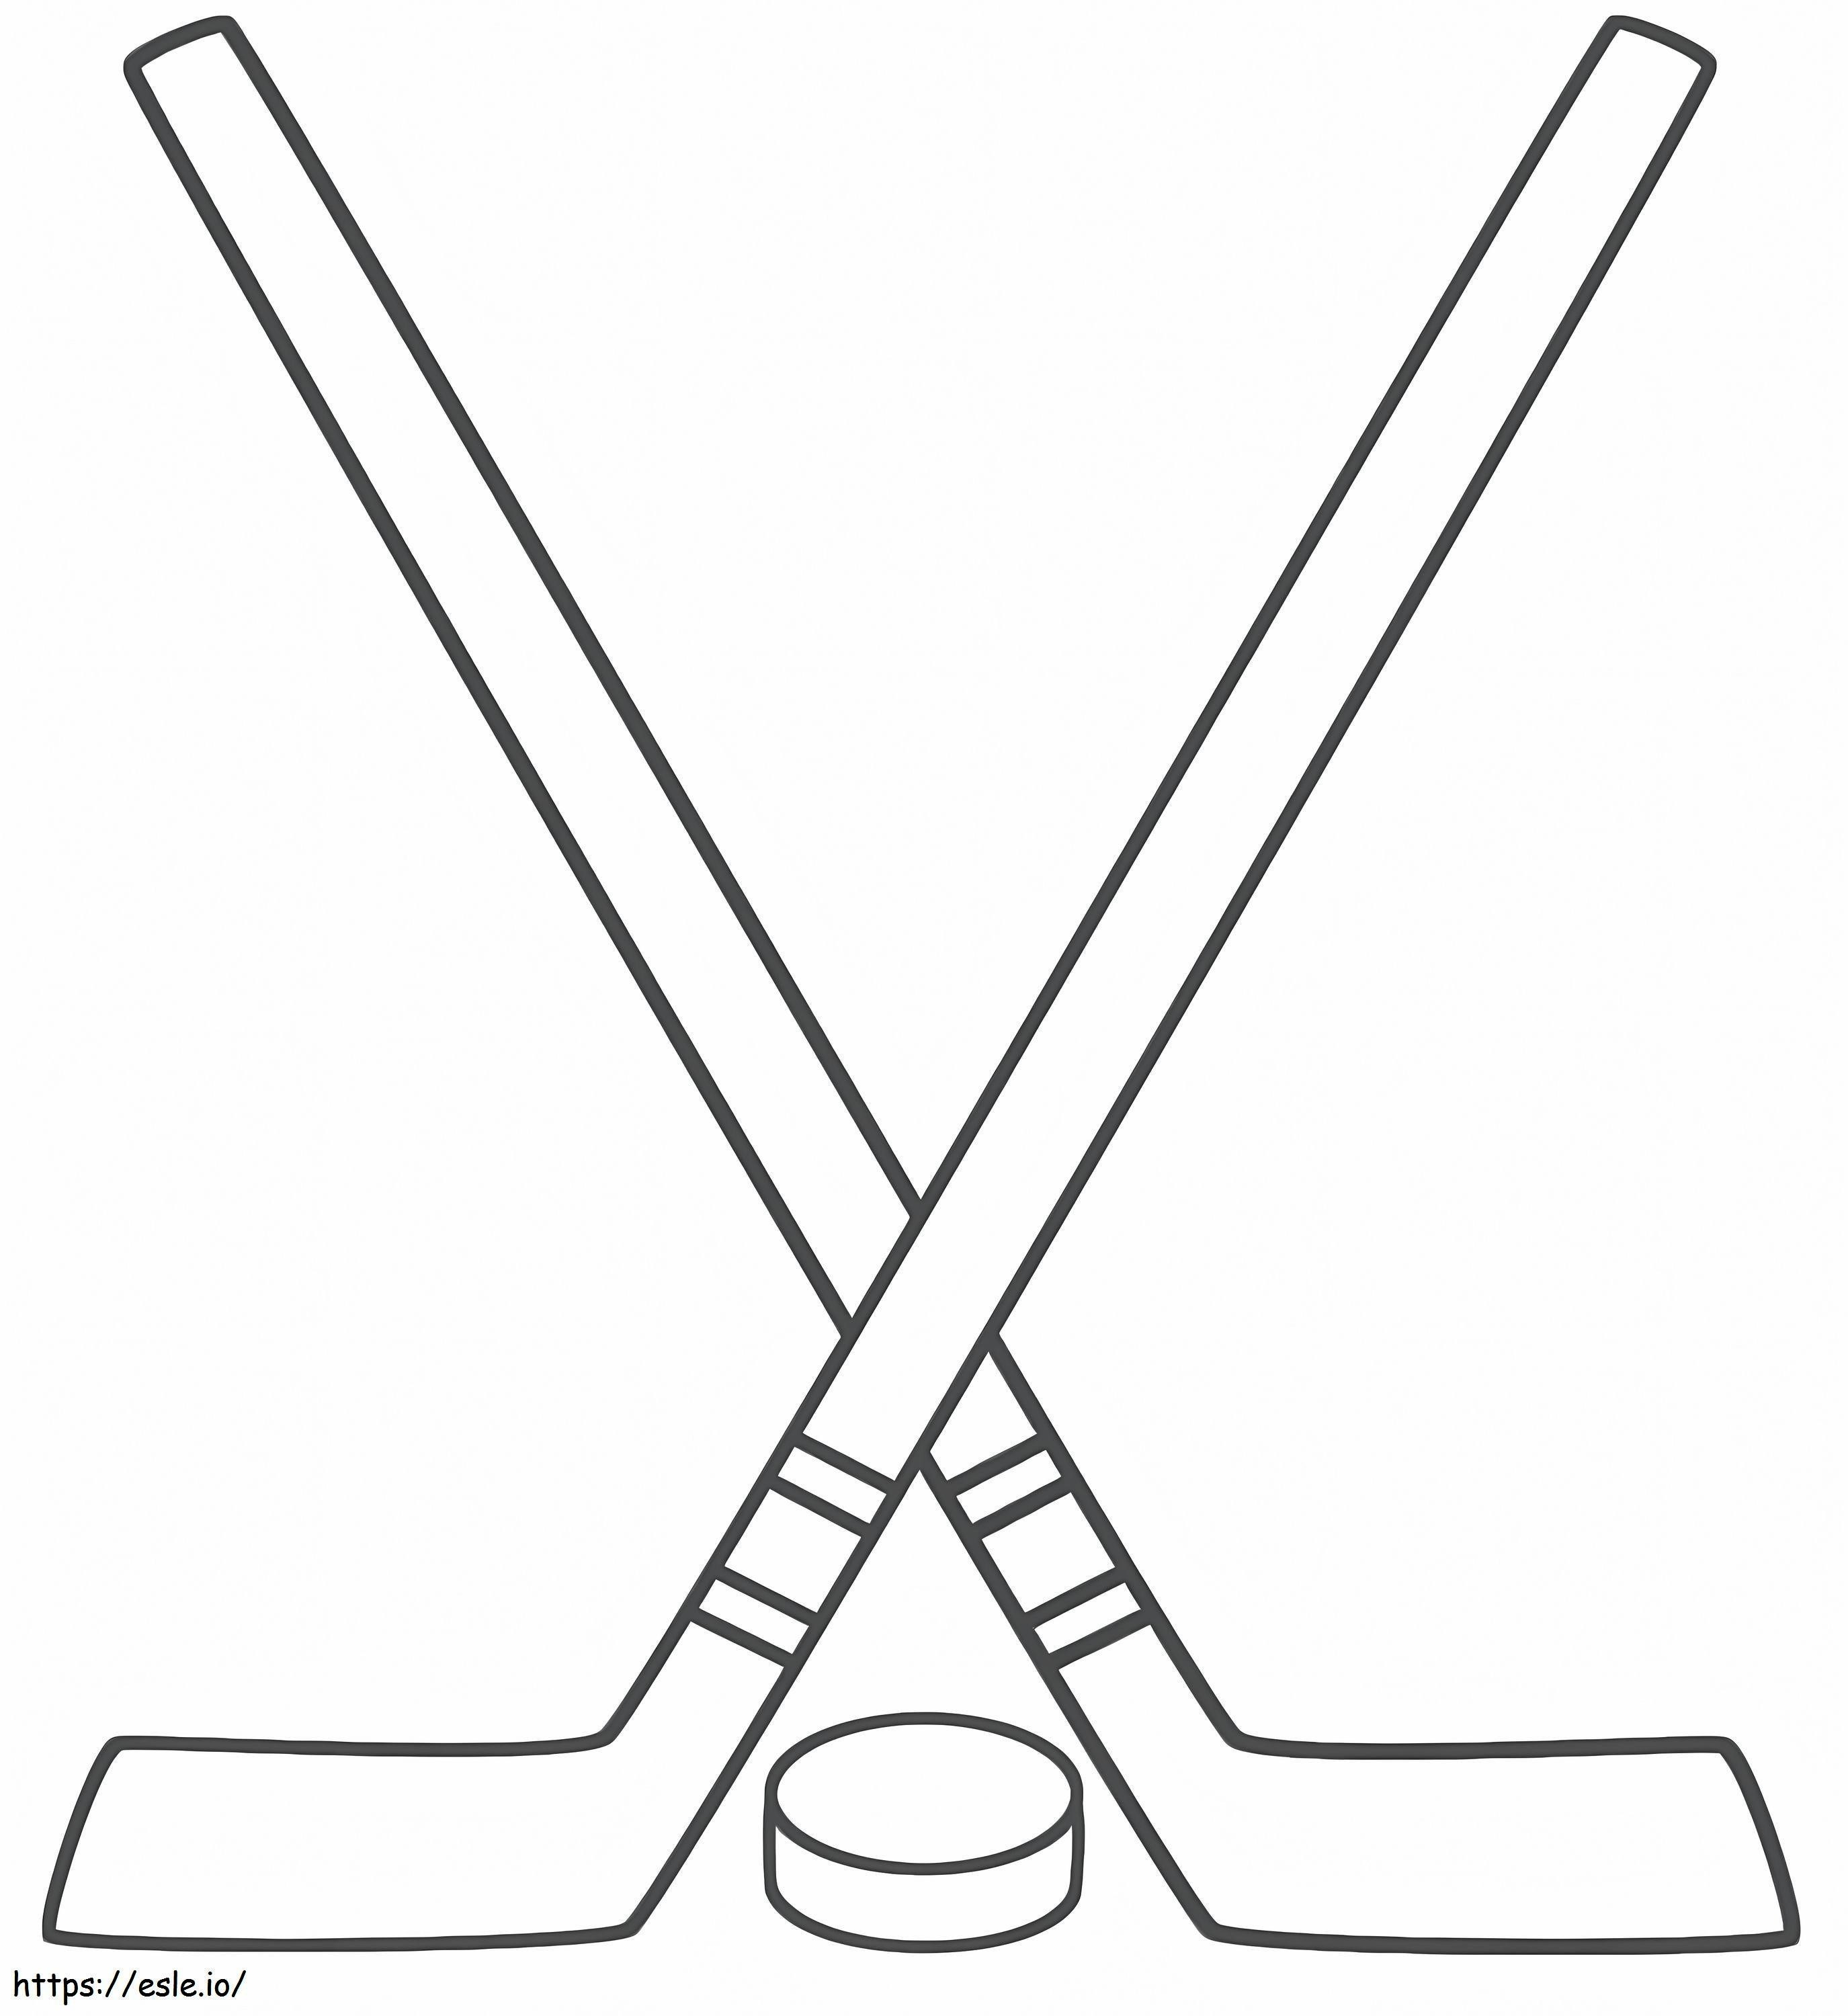 Coloriage Deux bâtons de hockey avec rondelle à imprimer dessin